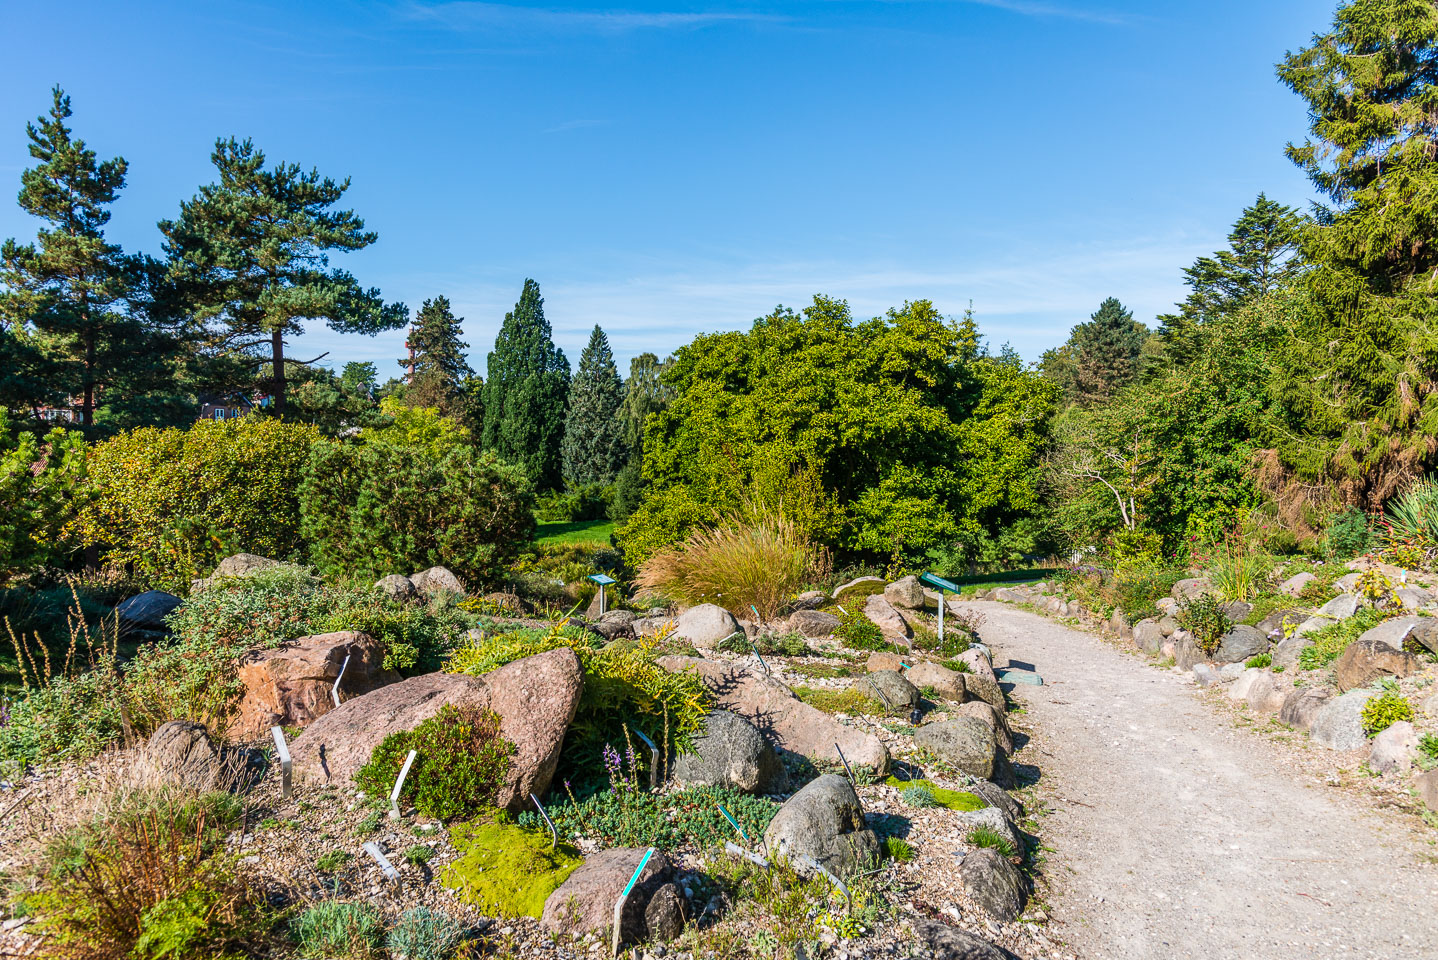 DE160406-The-path-through-the-botanical-garden.jpg